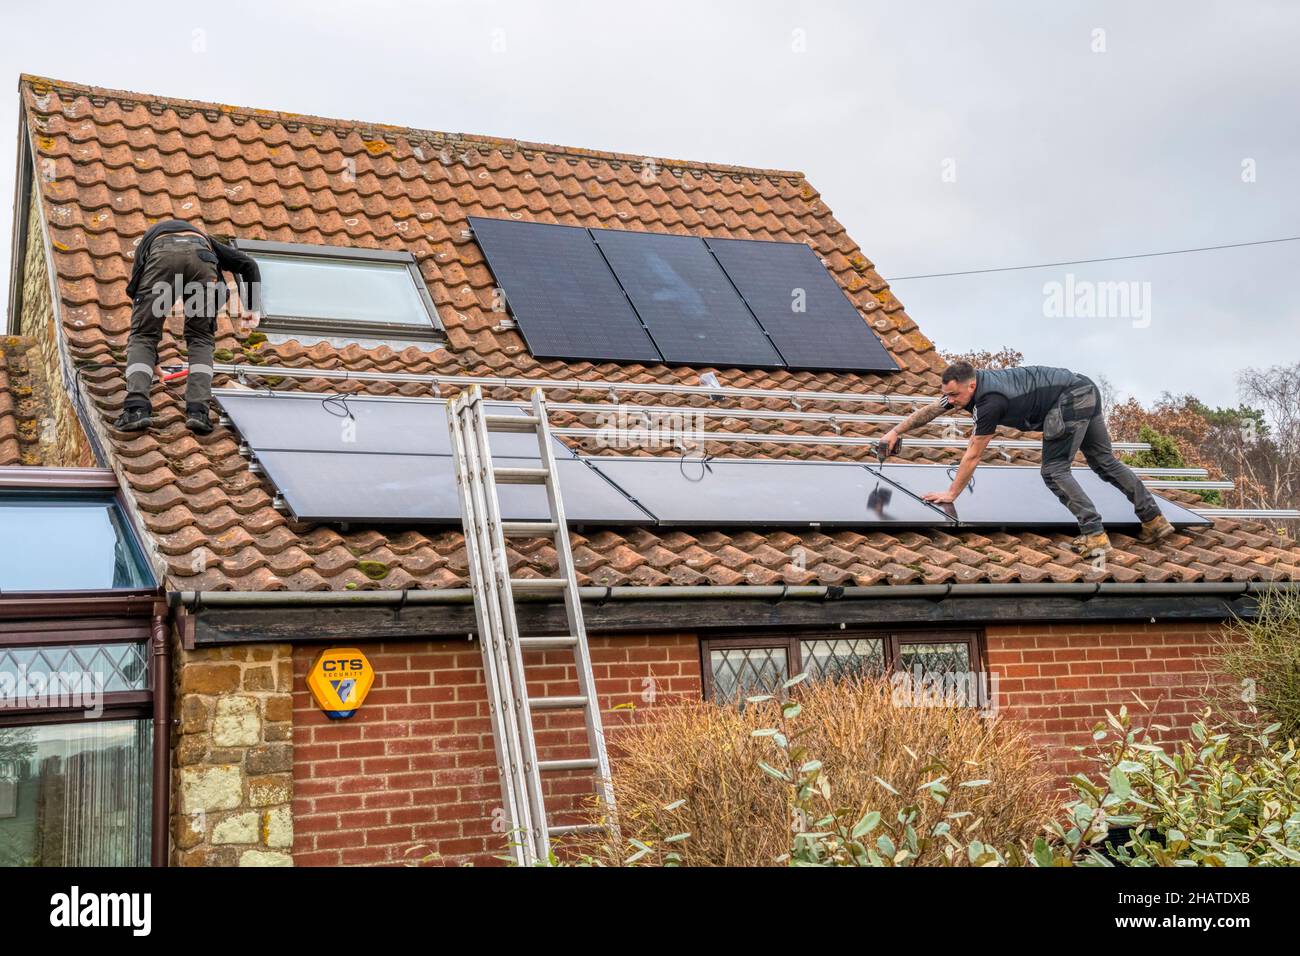 Lavoratori che installano pannelli solari o celle pv sul tetto a pannelli di un cottage Norfolk. NB: I locali nella fotografia sono proprietà liberate. Foto Stock